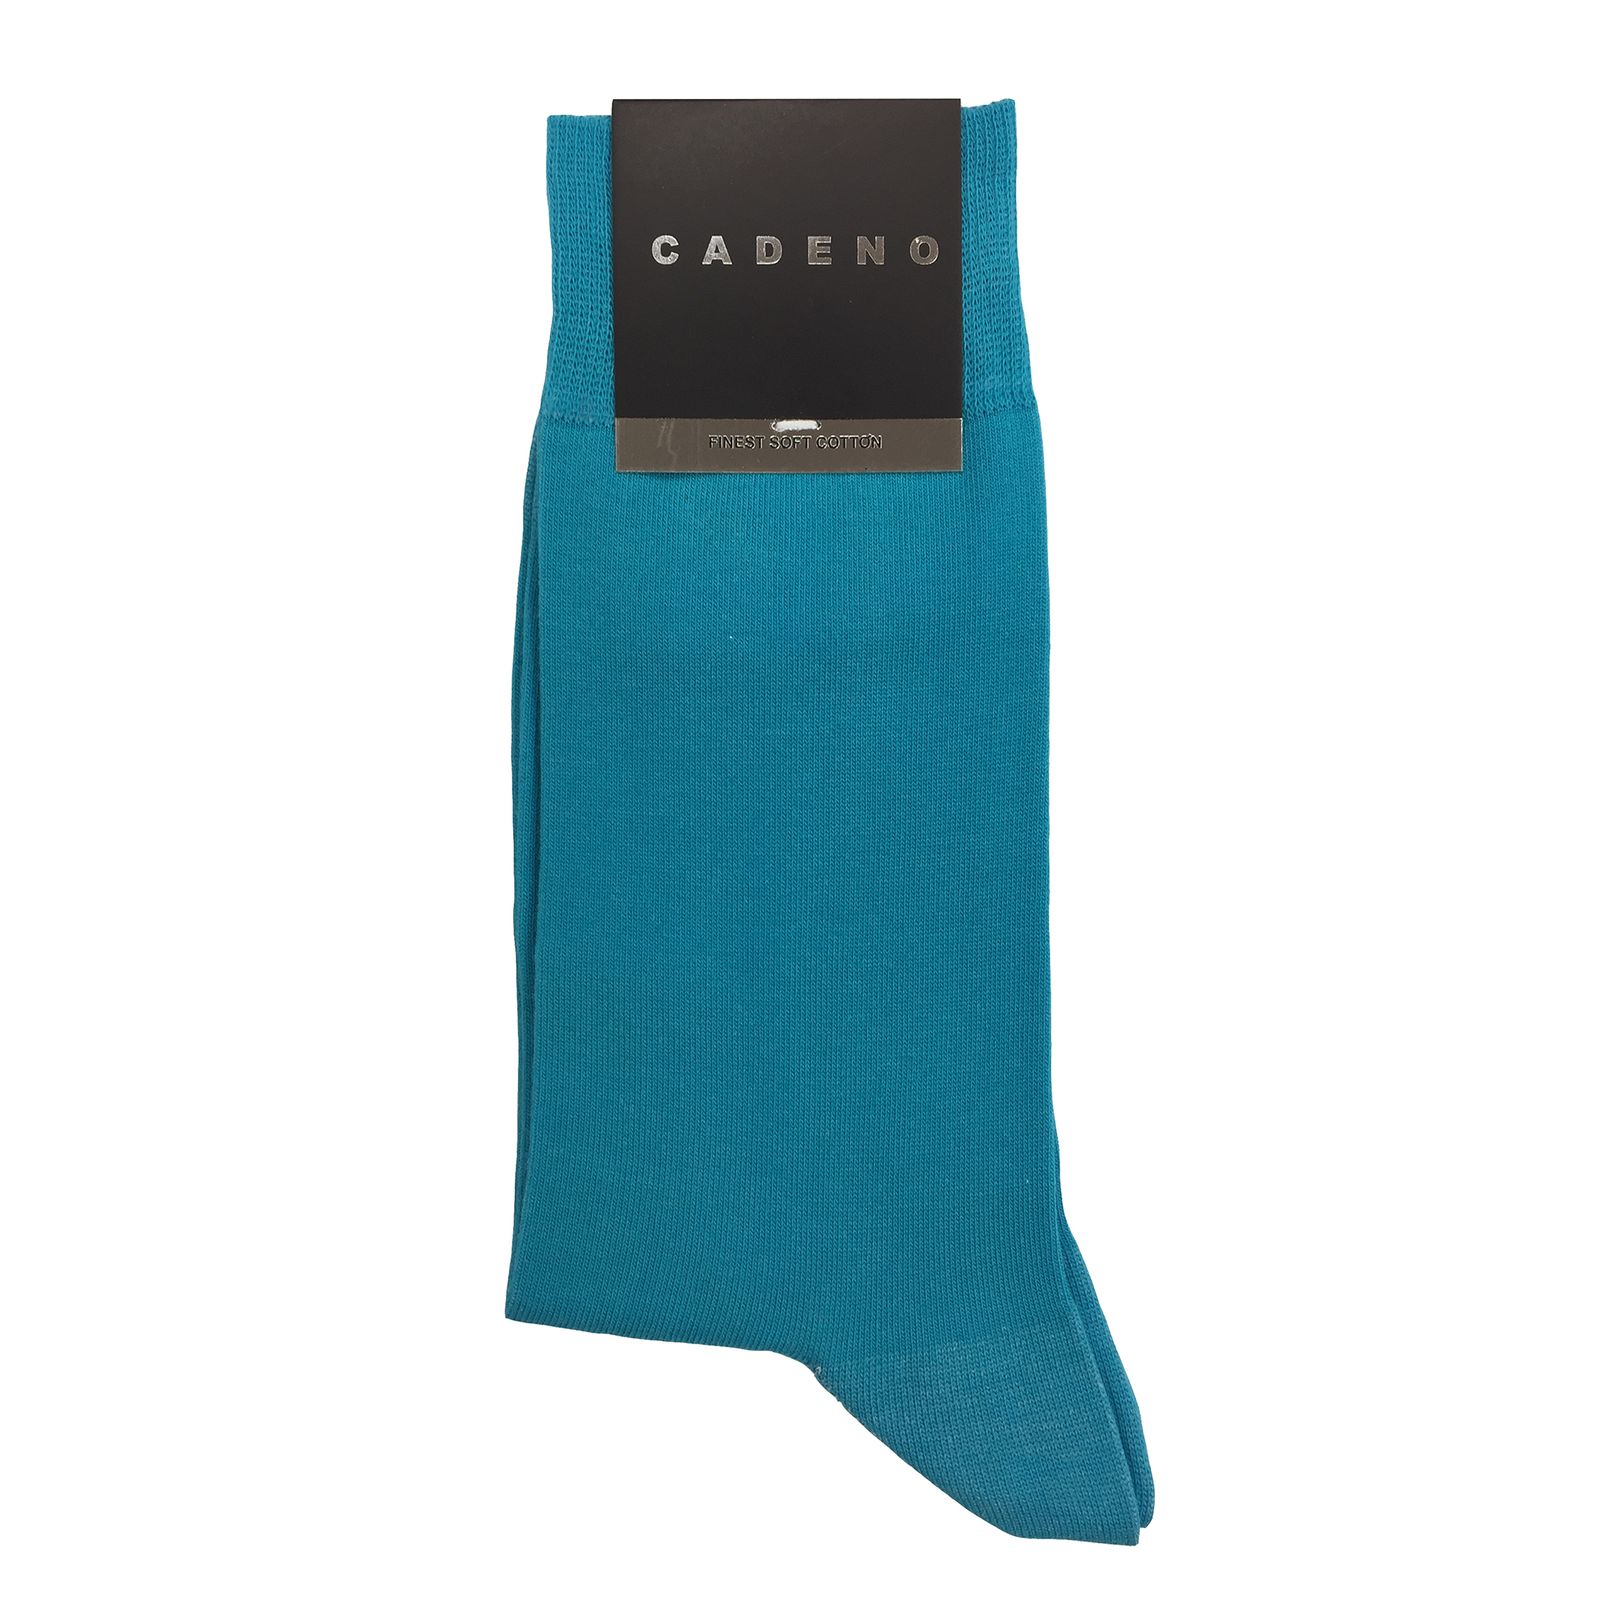 جوراب مردانه کادنو مدل CAF1001 رنگ آبی روشن -  - 1